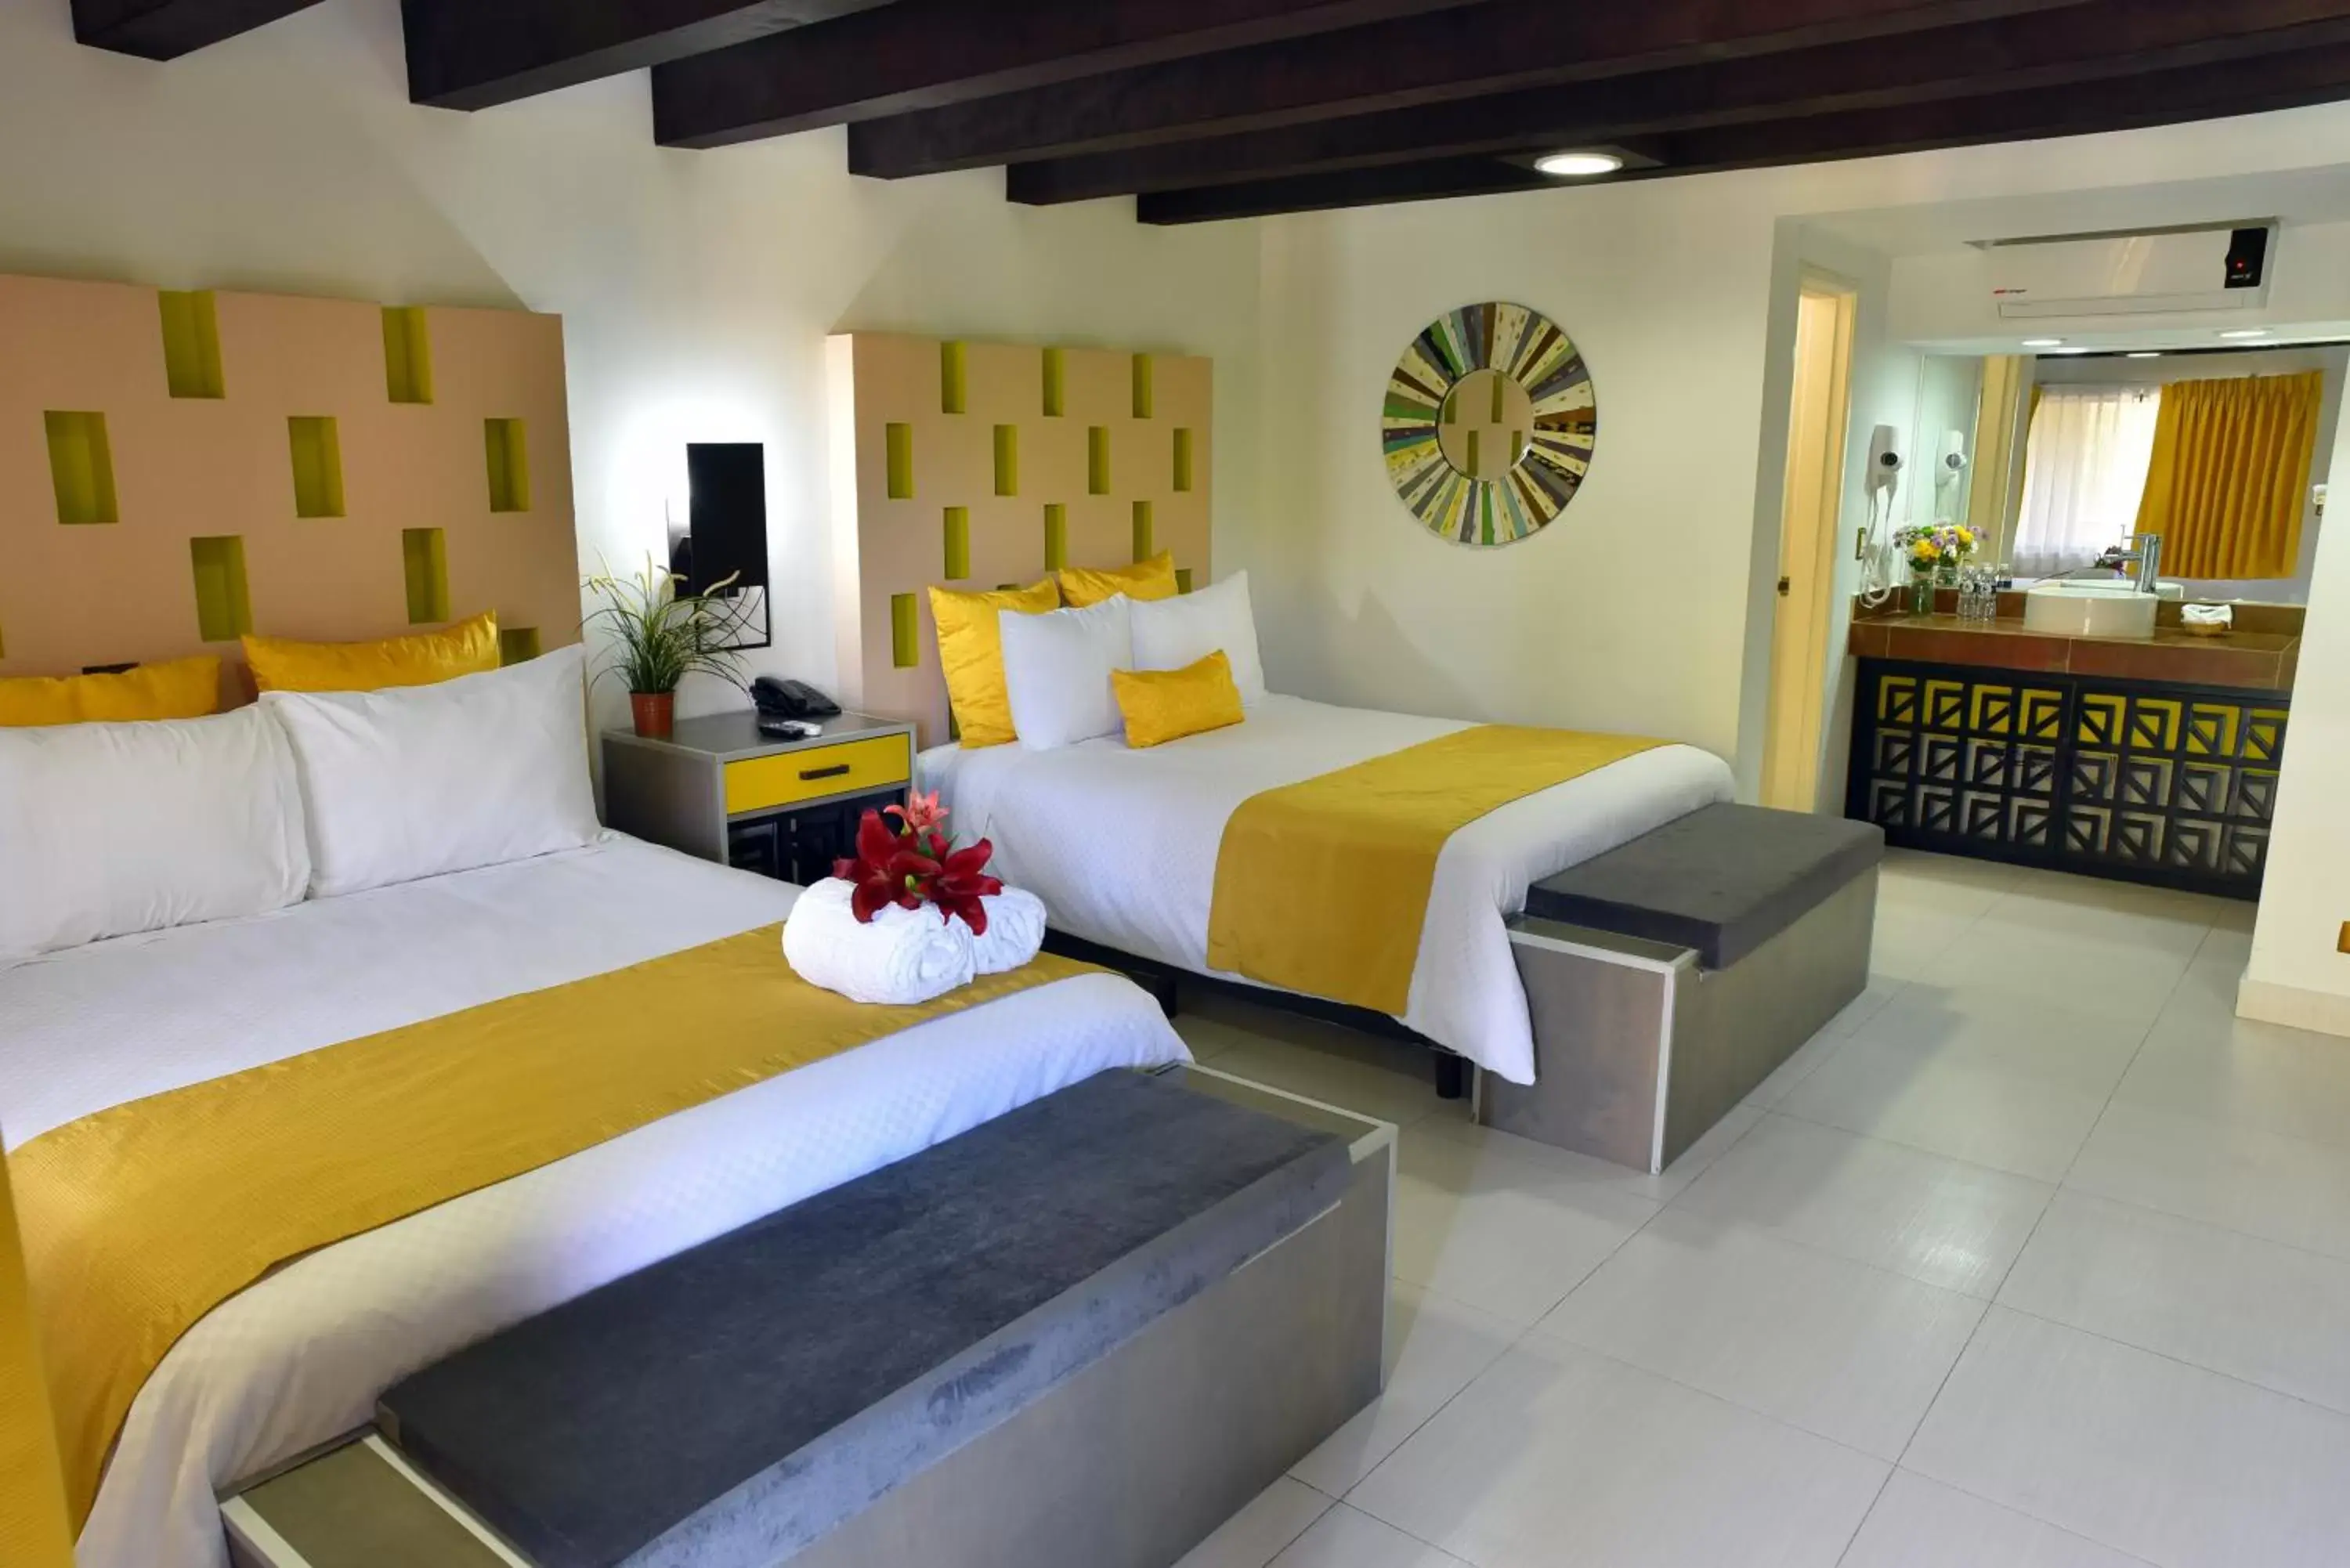 Bed in Baja Inn Hoteles Rio